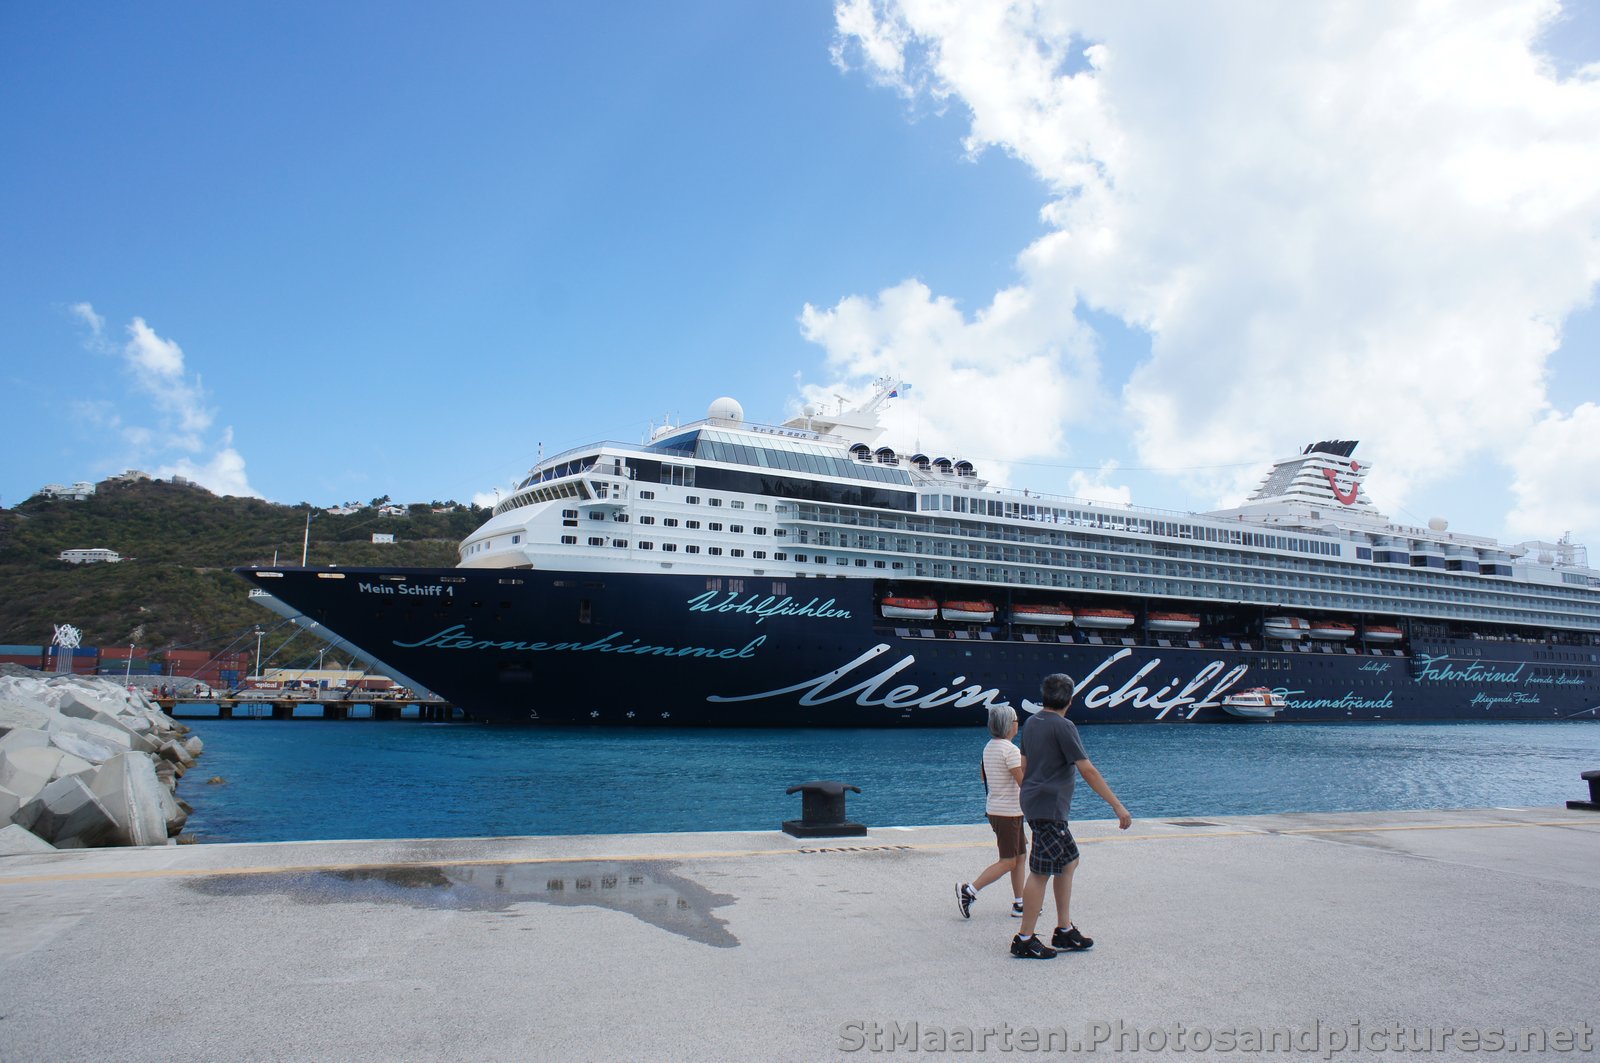 Mein Schiff Wohlfuhlen Cruise Ship docked at St Maarten.jpg
